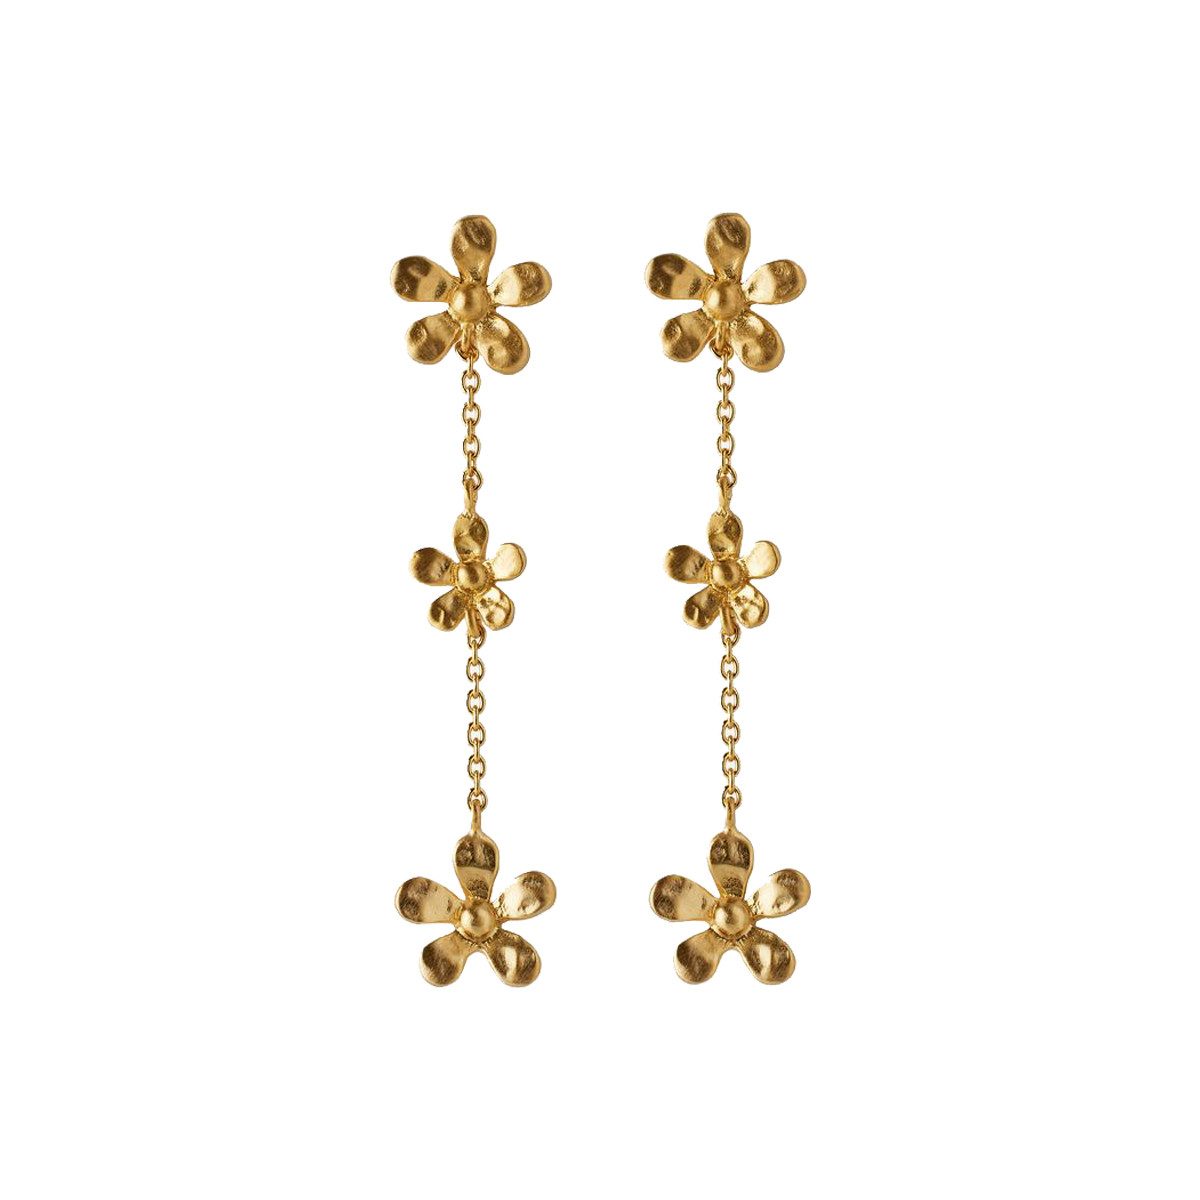 Pernille Corydon Paar Ohrhänger Damen Gold - Wild Poppy Ohrkette vergoldet in Blumenform 4,8 cm, Silber 925, 18 Karat Vergoldet